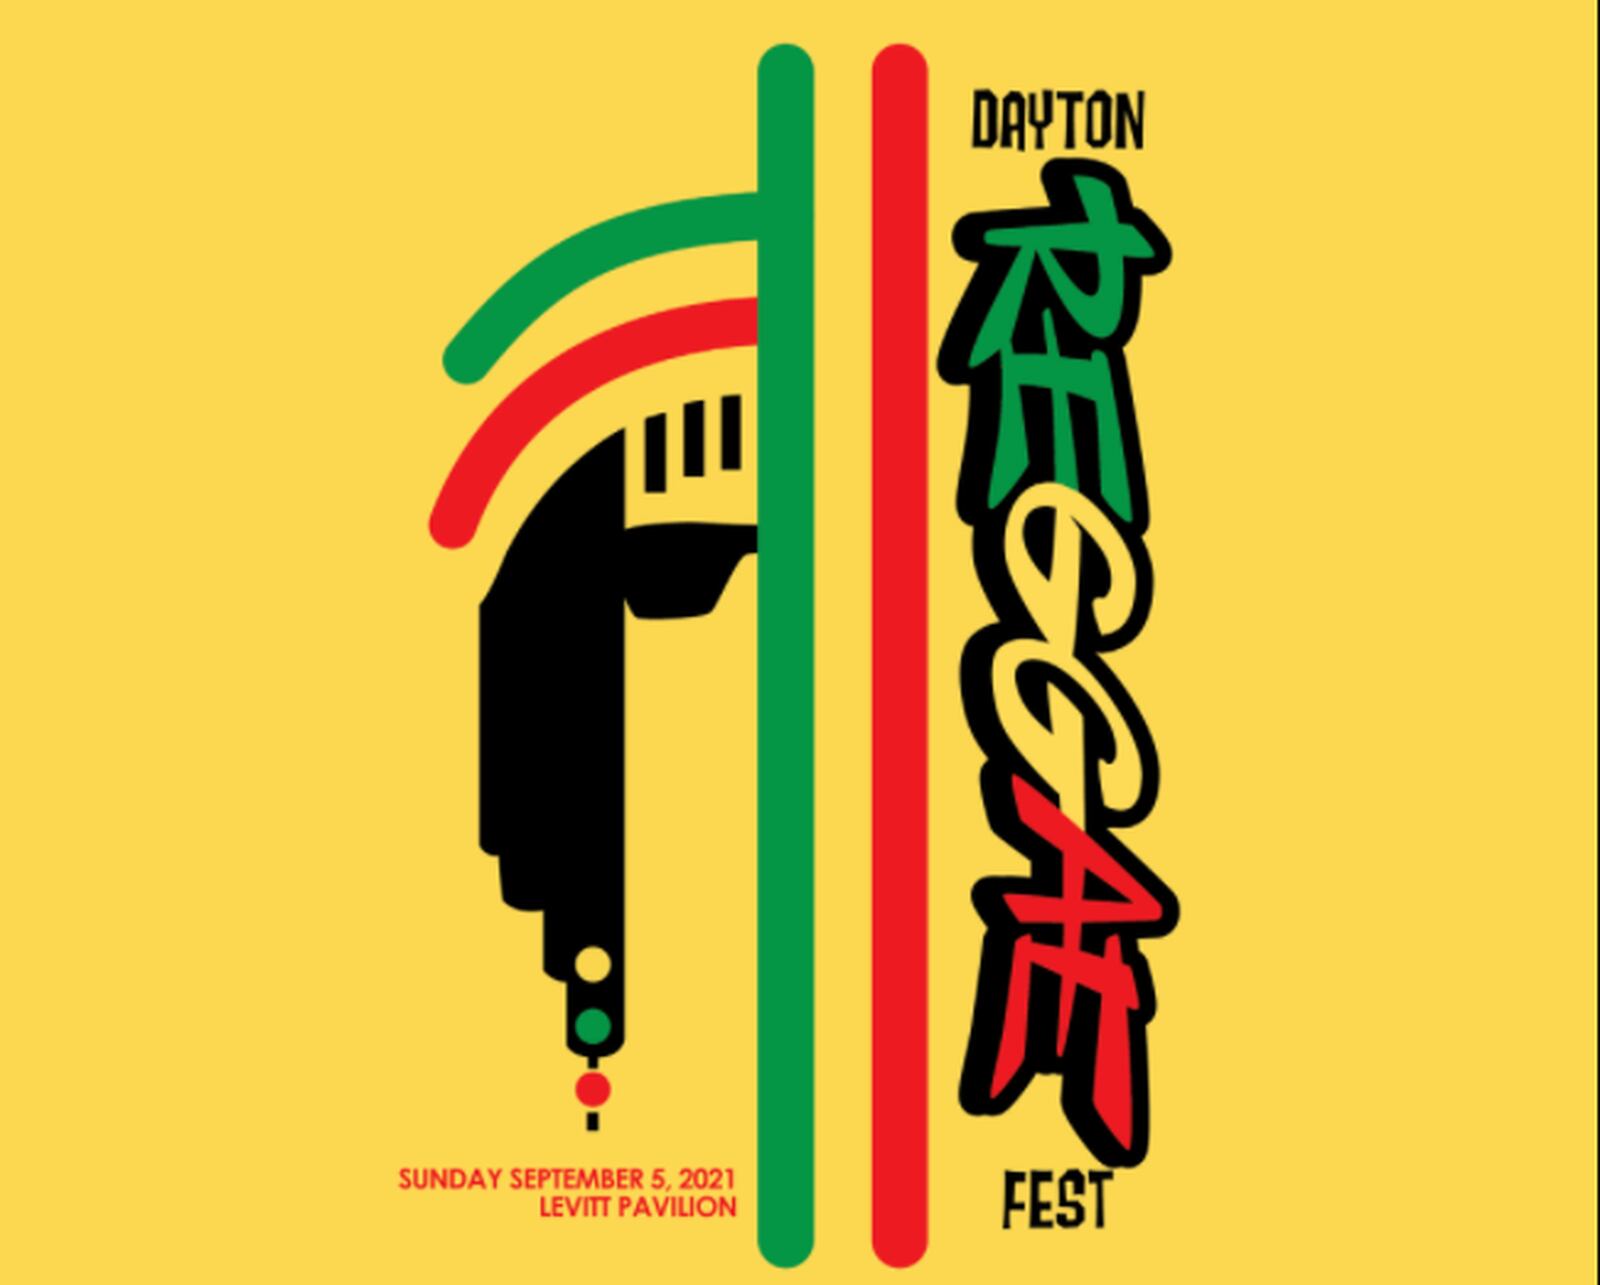 Dayton Reggae Festival kicks off today WHIO TV 7 and WHIO Radio